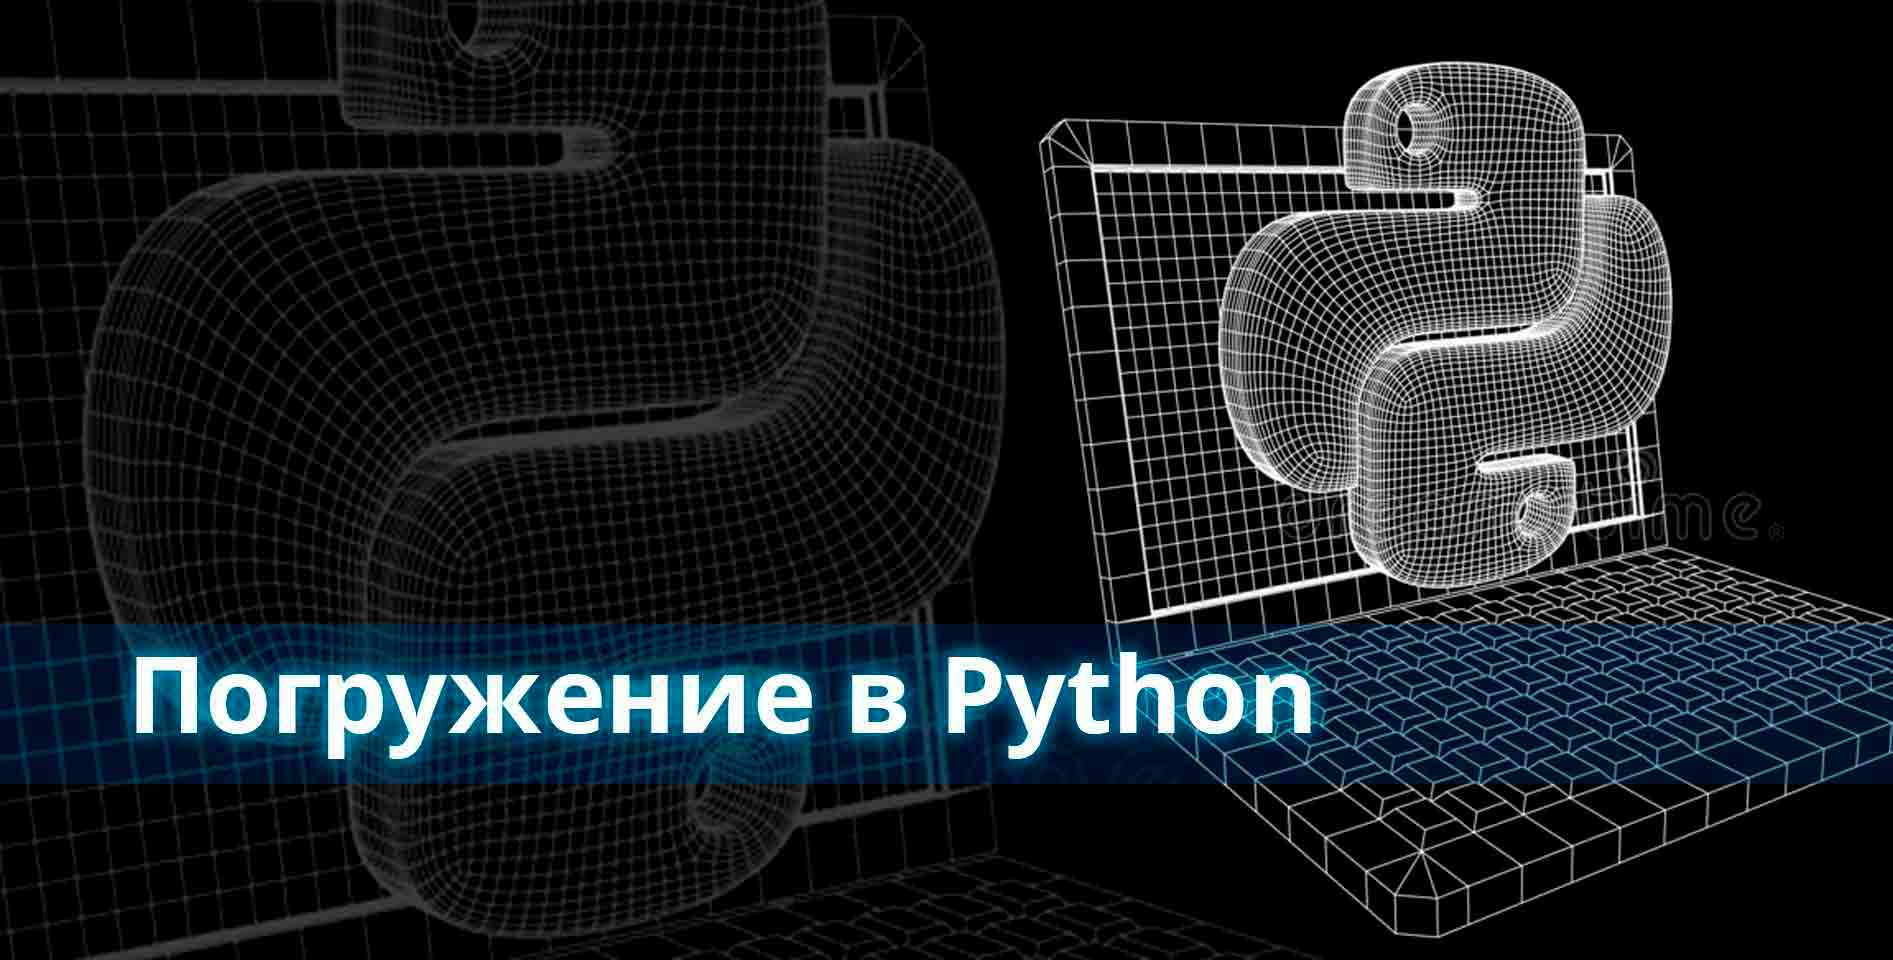 Coursera — Погружение в Python